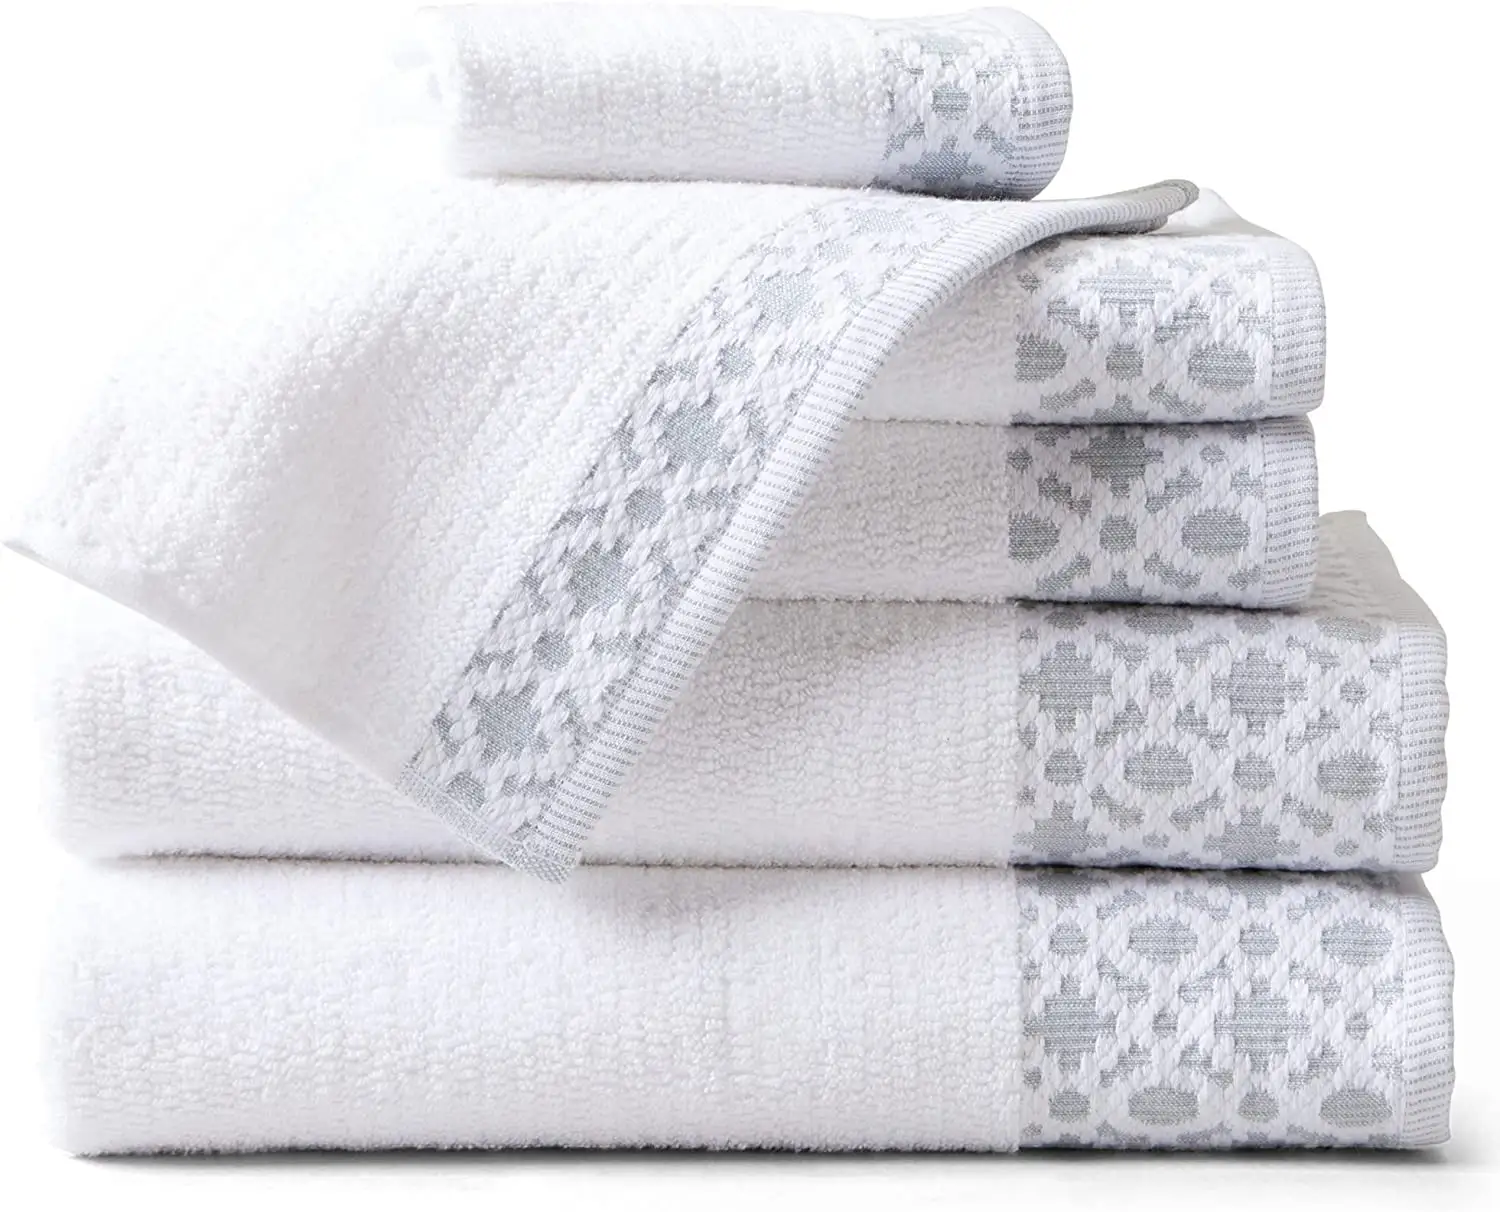 Benutzer definierte Luxus Hotel Badet ücher und Handtuch hochwertige 100% Baumwolle Handtücher Set für Hotel Spa benutzer definierte Logo